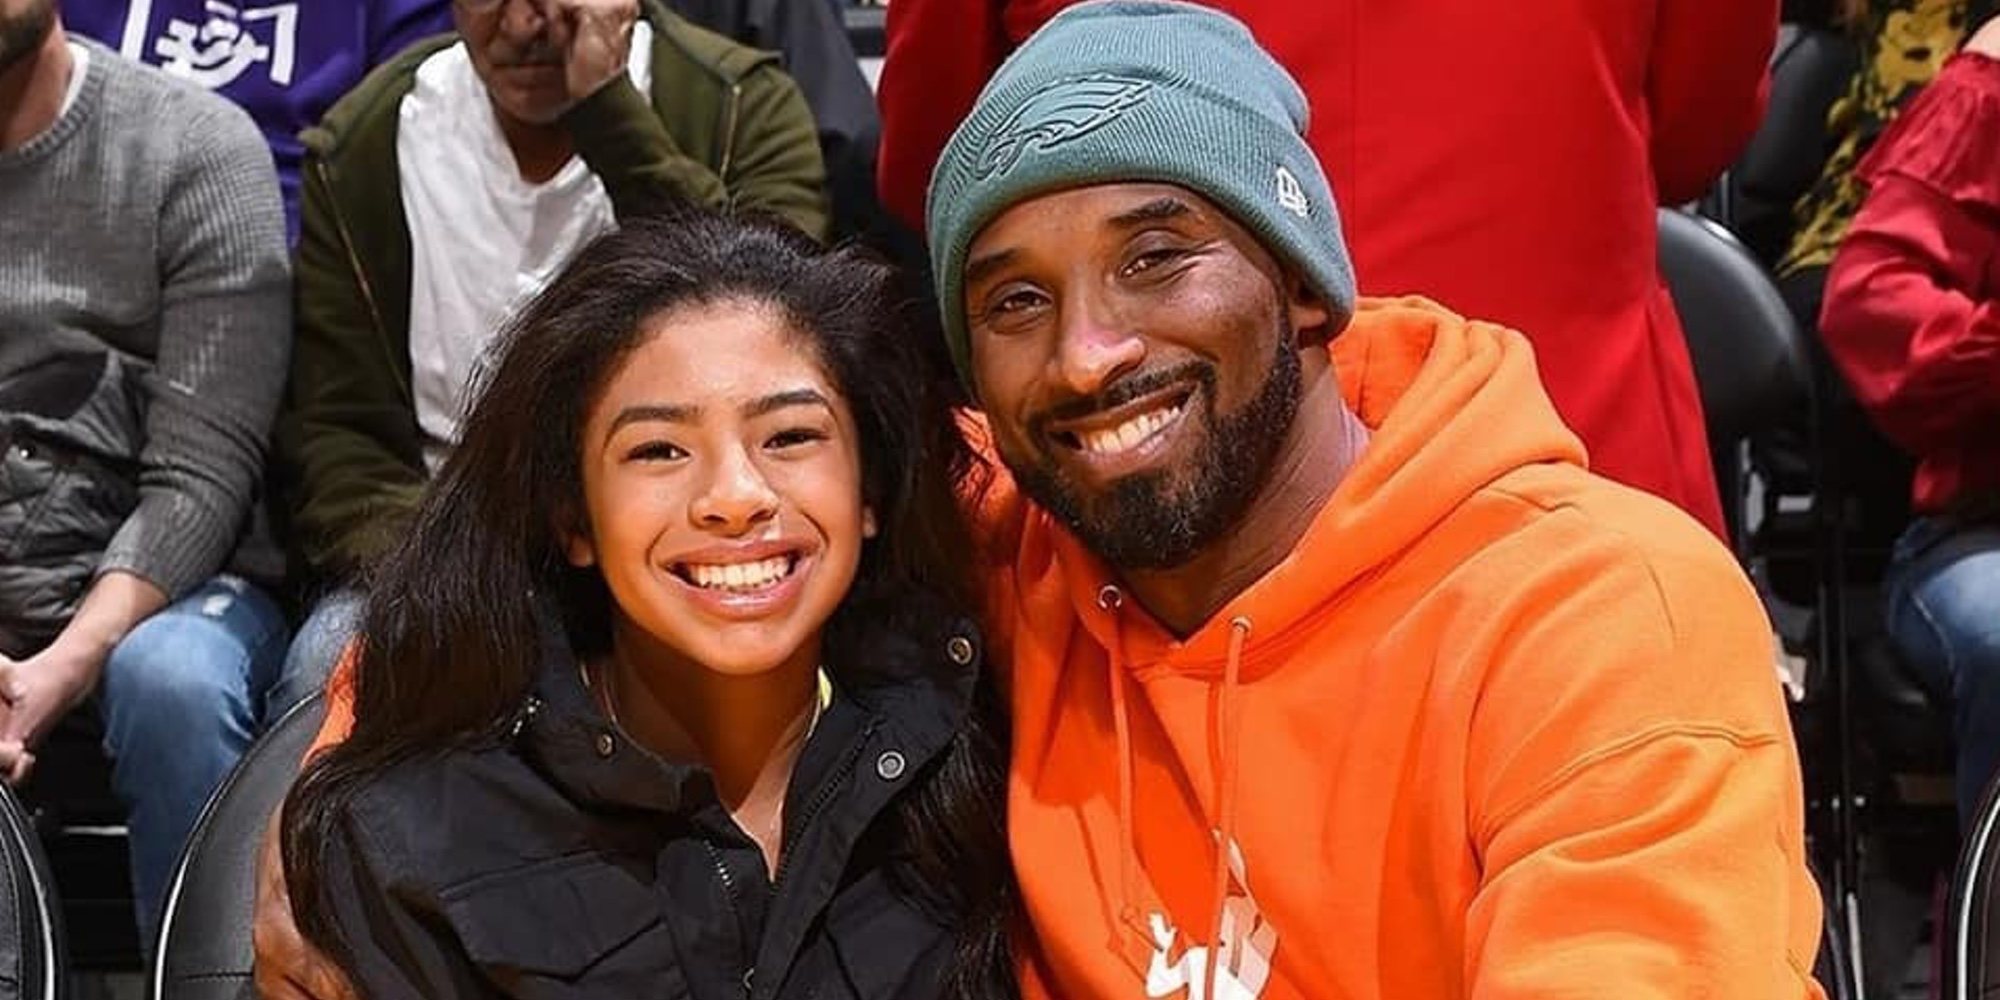 El homenaje de Usher y Los Angeles Lakers a Kobe Bryant y su hija Gianna en el Staples Center